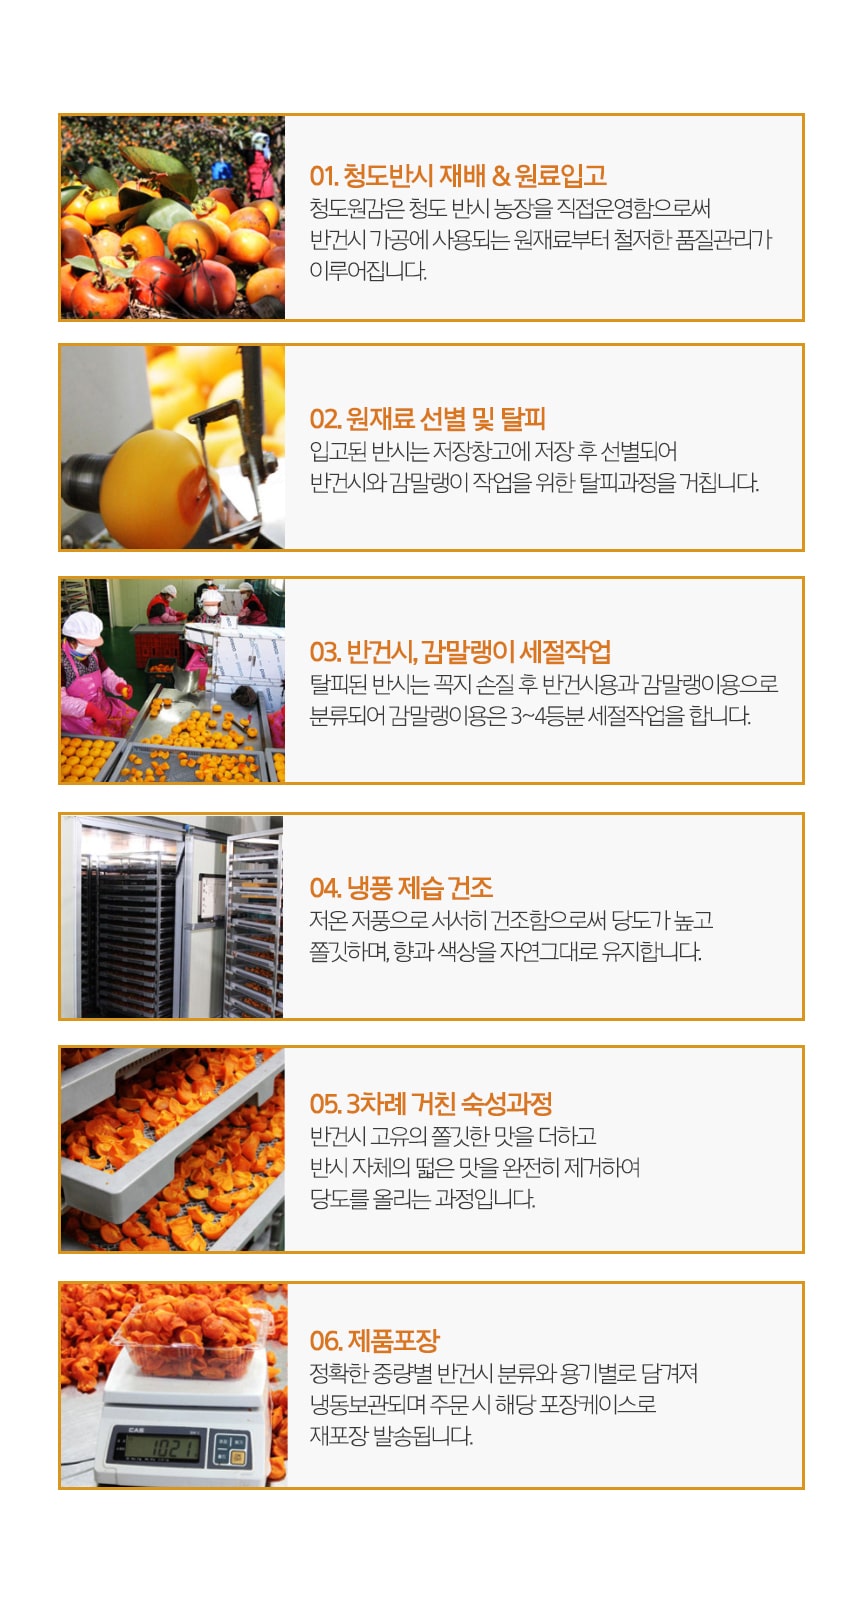 韓國食品-韓國雙款柿乾禮盒 (禮盒套裝9月20日開始送貨)